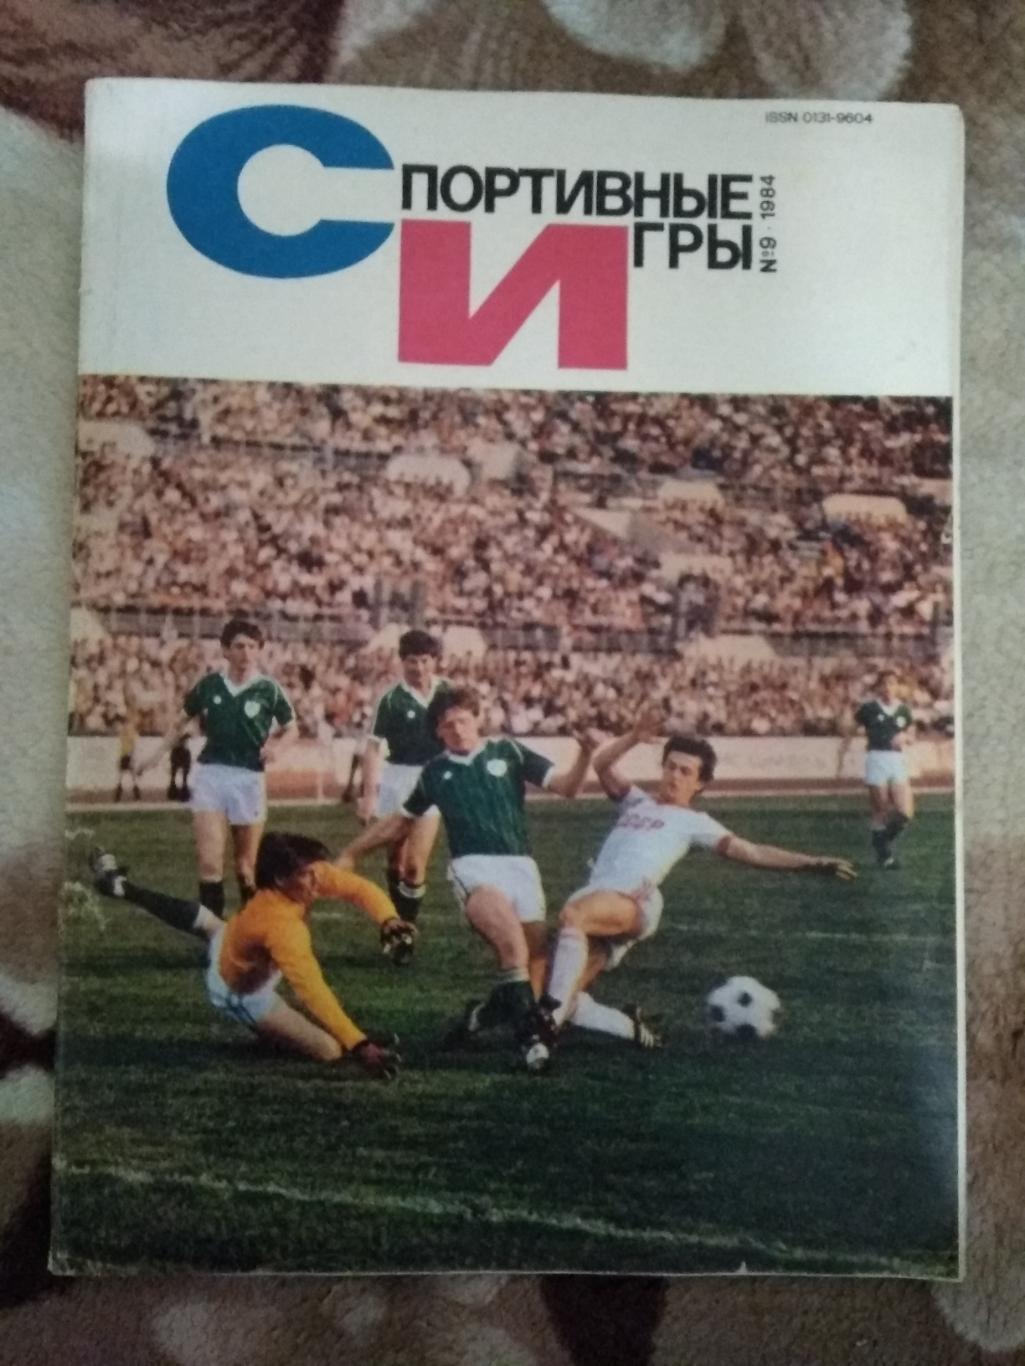 Журнал.Спортивные игры № 9 1984 г.